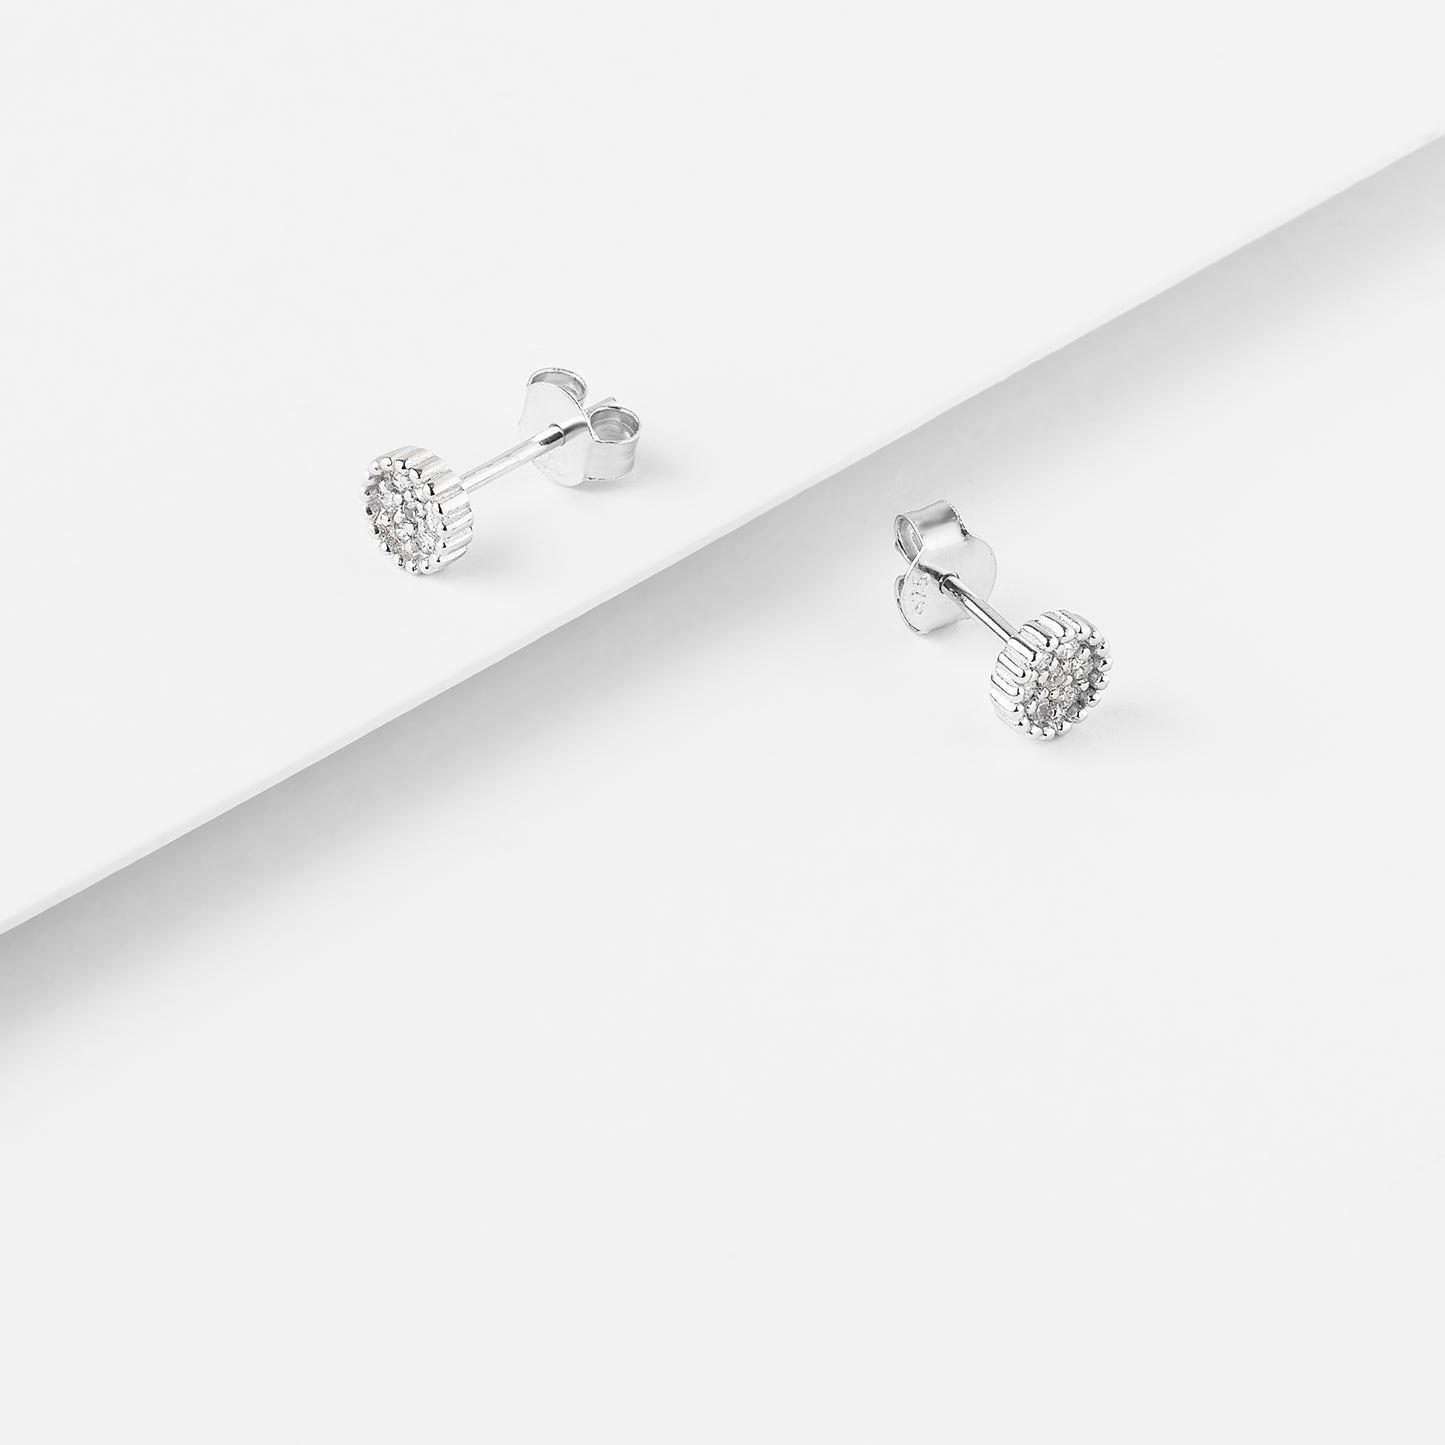 Sterling Silver Zirconia Cluster Crown Set Stud Earrings